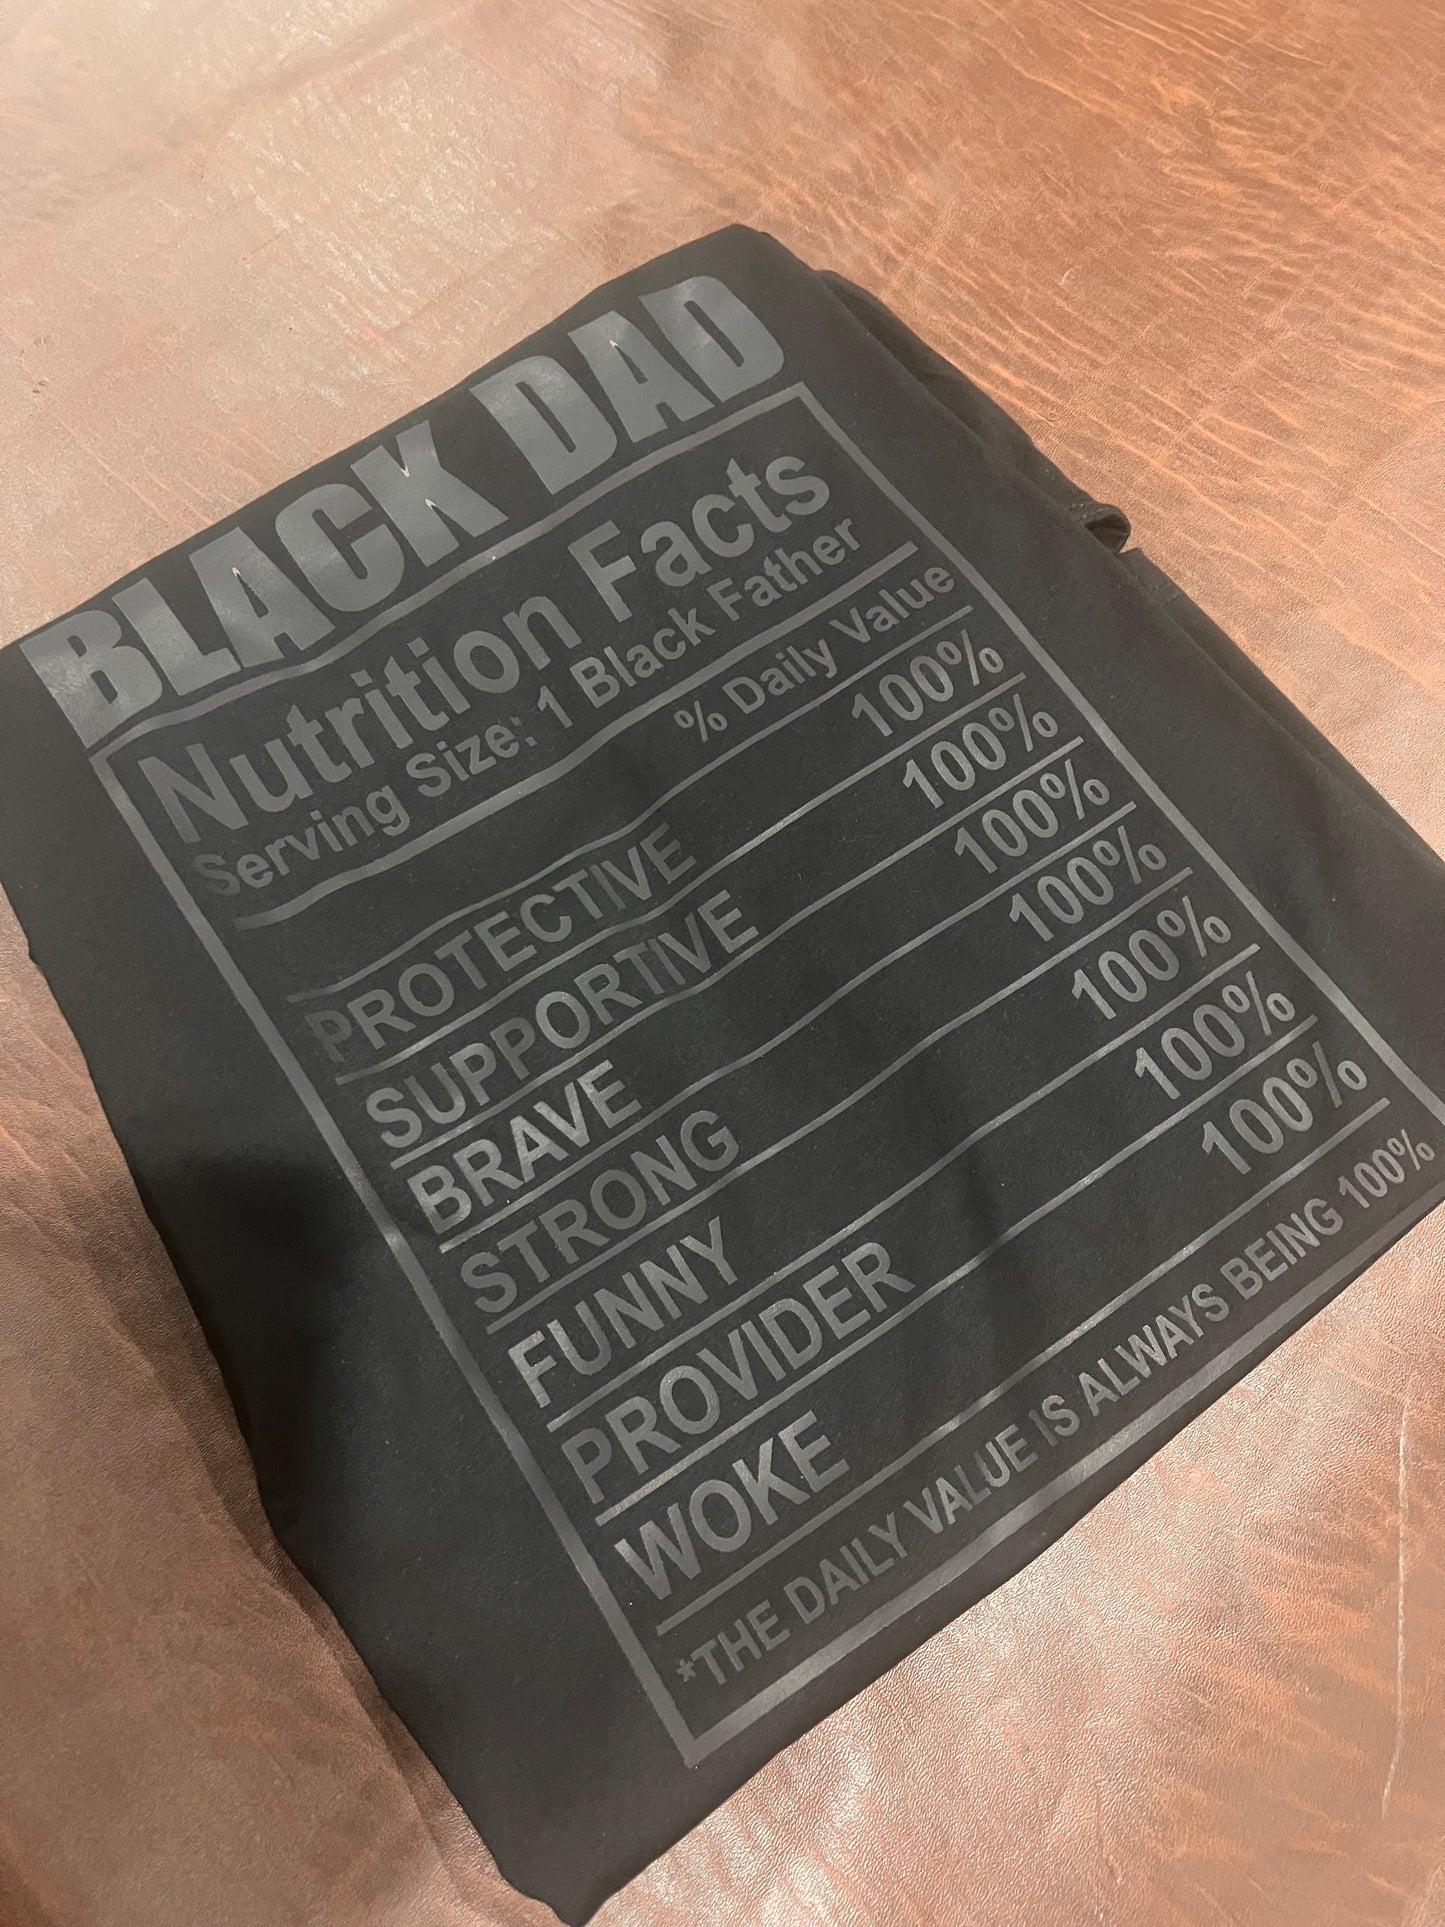 Black Dad